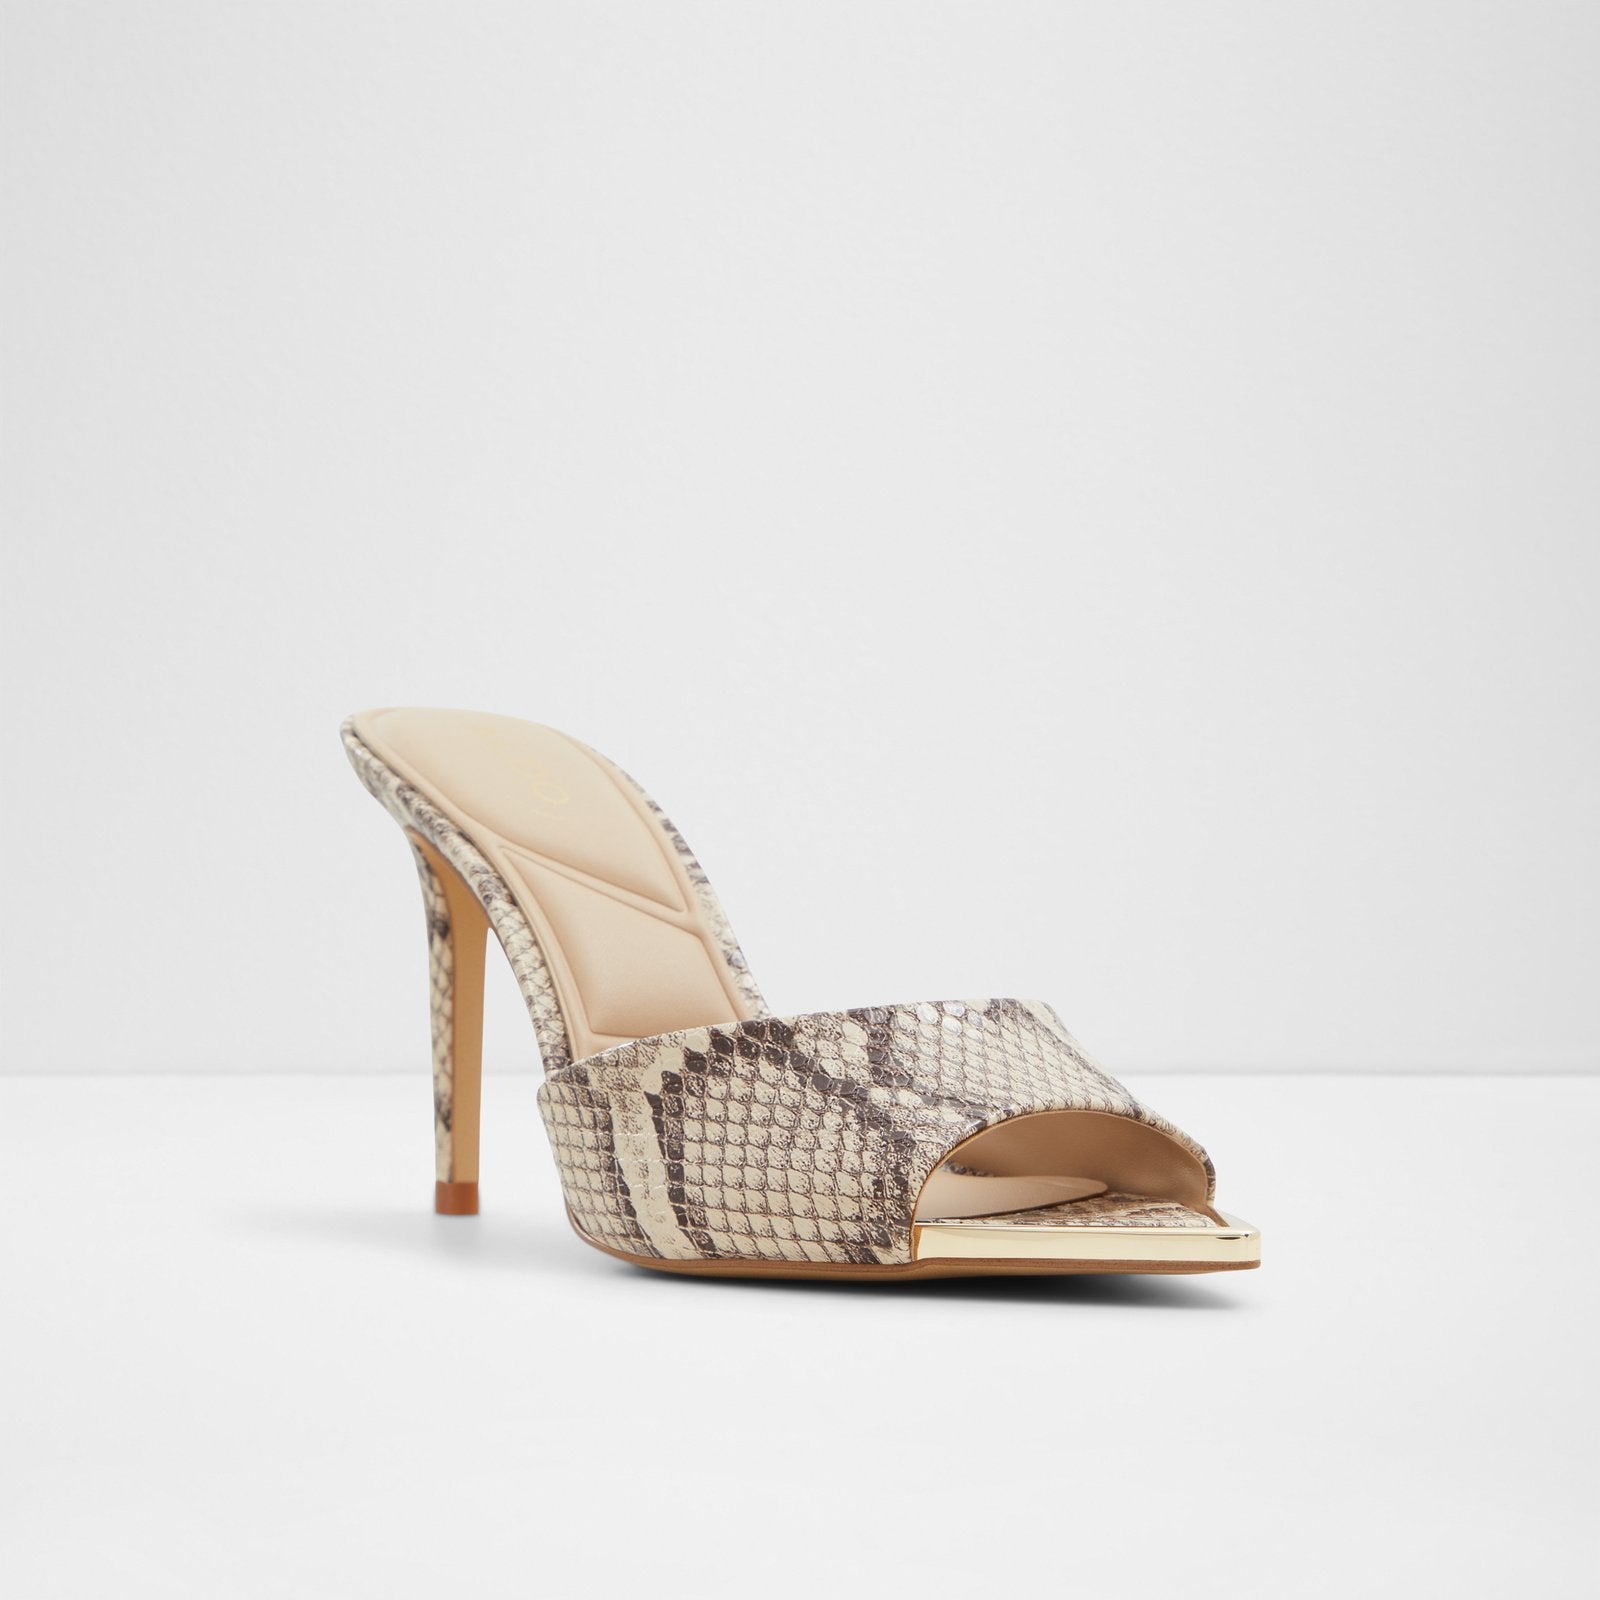 Anniebrilden / Heeled Sandals